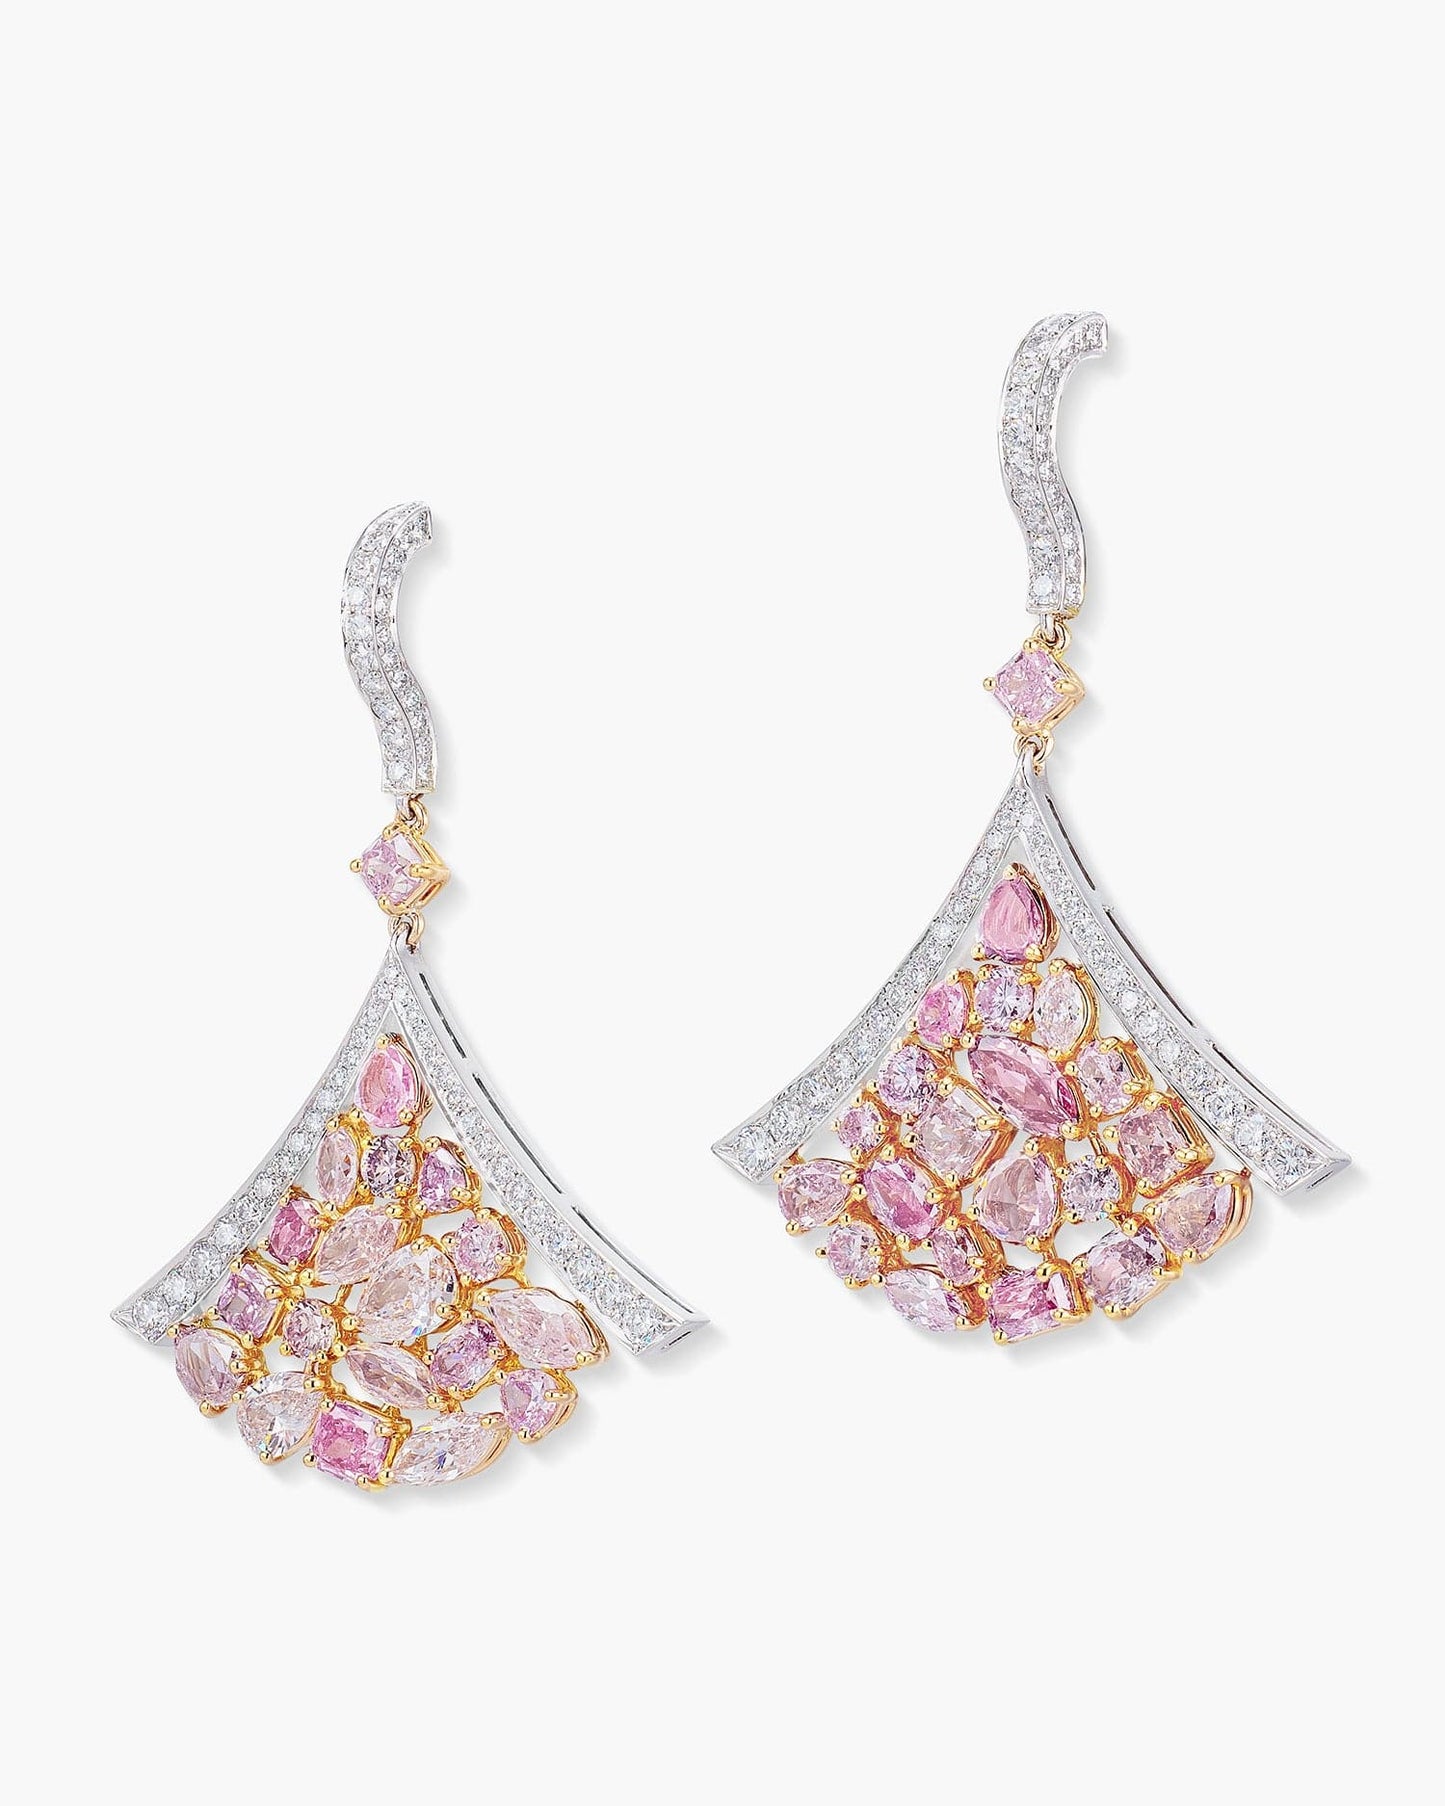 Pink and White Diamond Fan Earrings